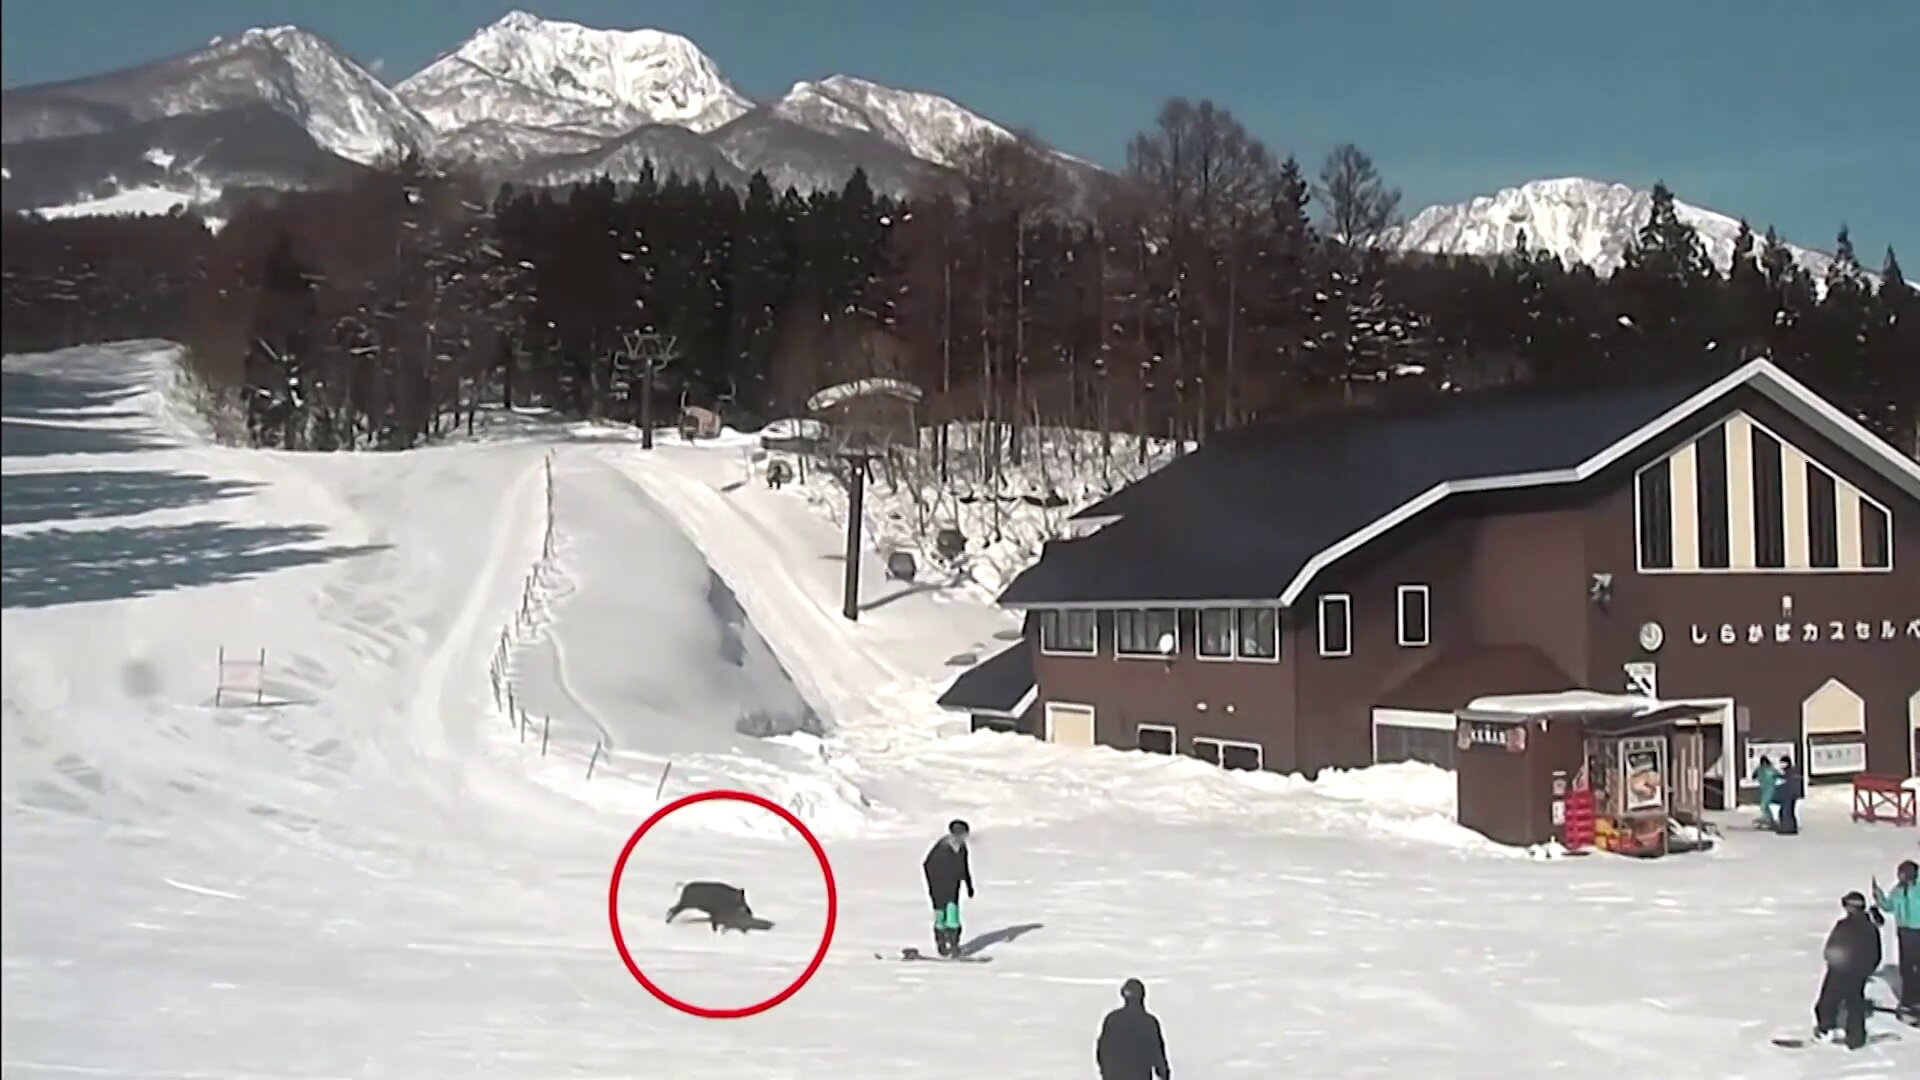 Vaddisznó támadt snowboardosokra egy japán síterepen